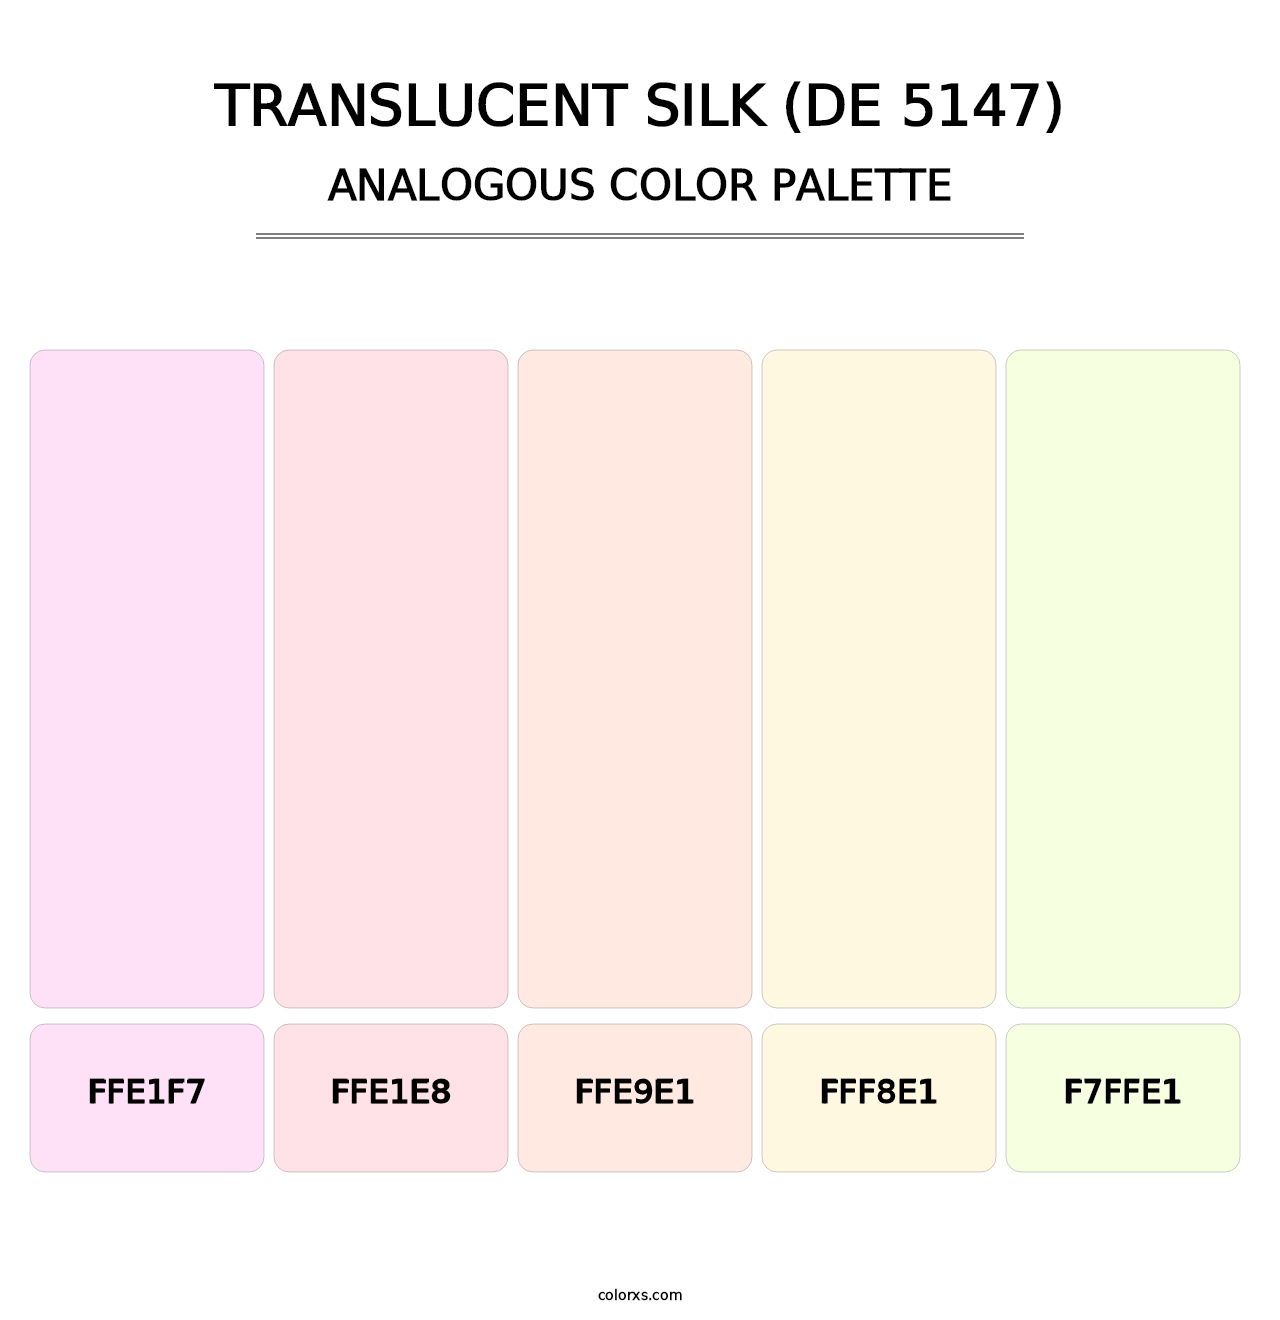 Translucent Silk (DE 5147) - Analogous Color Palette